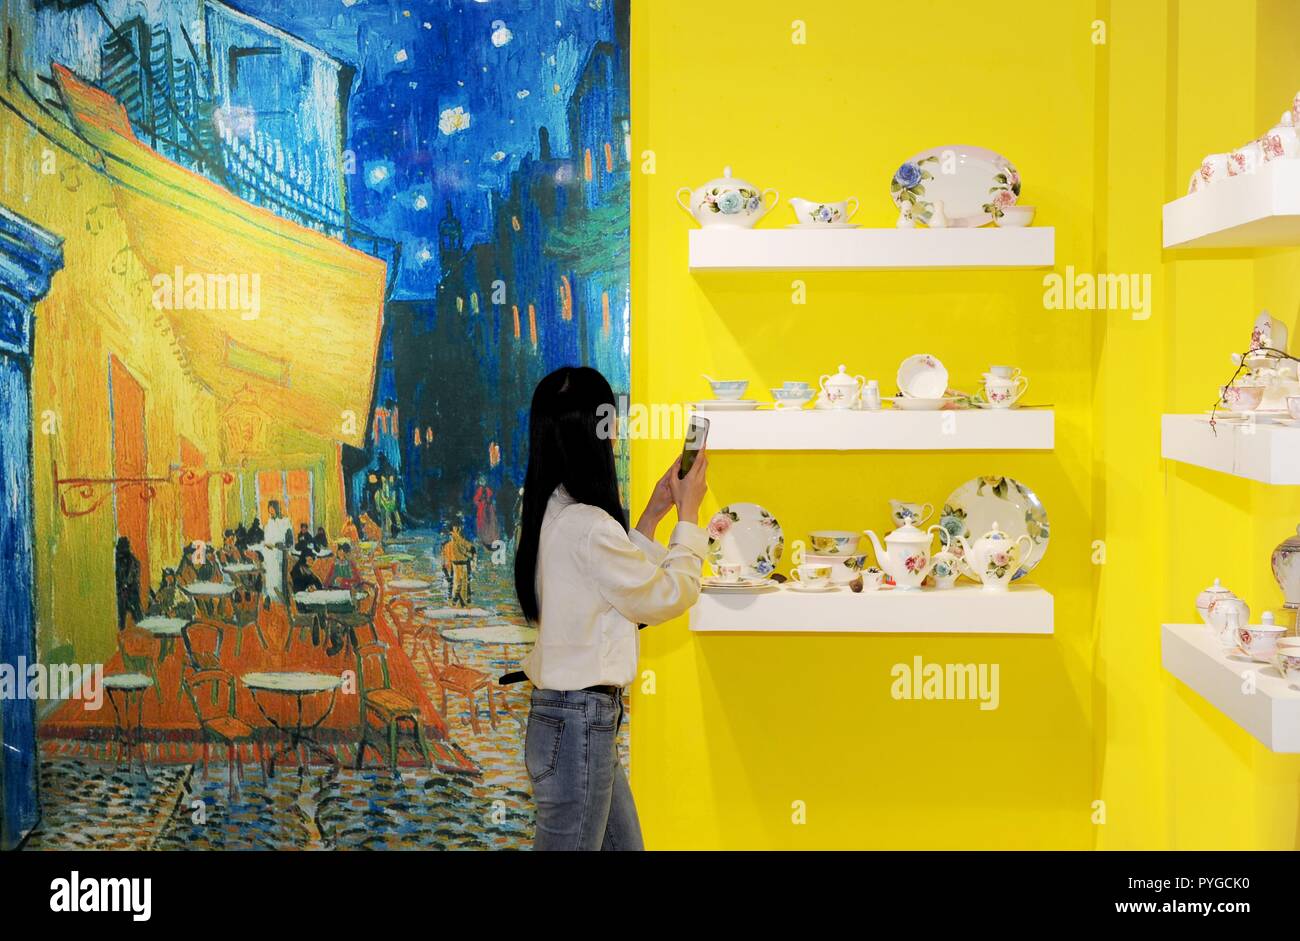 Yulin cinese di Guangxi Zhuang Regione autonoma. 27 ott 2018. Un visitatore visualizza ceramiche in una città di ceramica in Beiliu City, a sud della Cina di Guangxi Zhuang Regione autonoma, Ottobre 27, 2018. La città di ceramica è stato istituito per promuovere la locale industria ceramica. Credito: Wei Hai/Xinhua/Alamy Live News Foto Stock